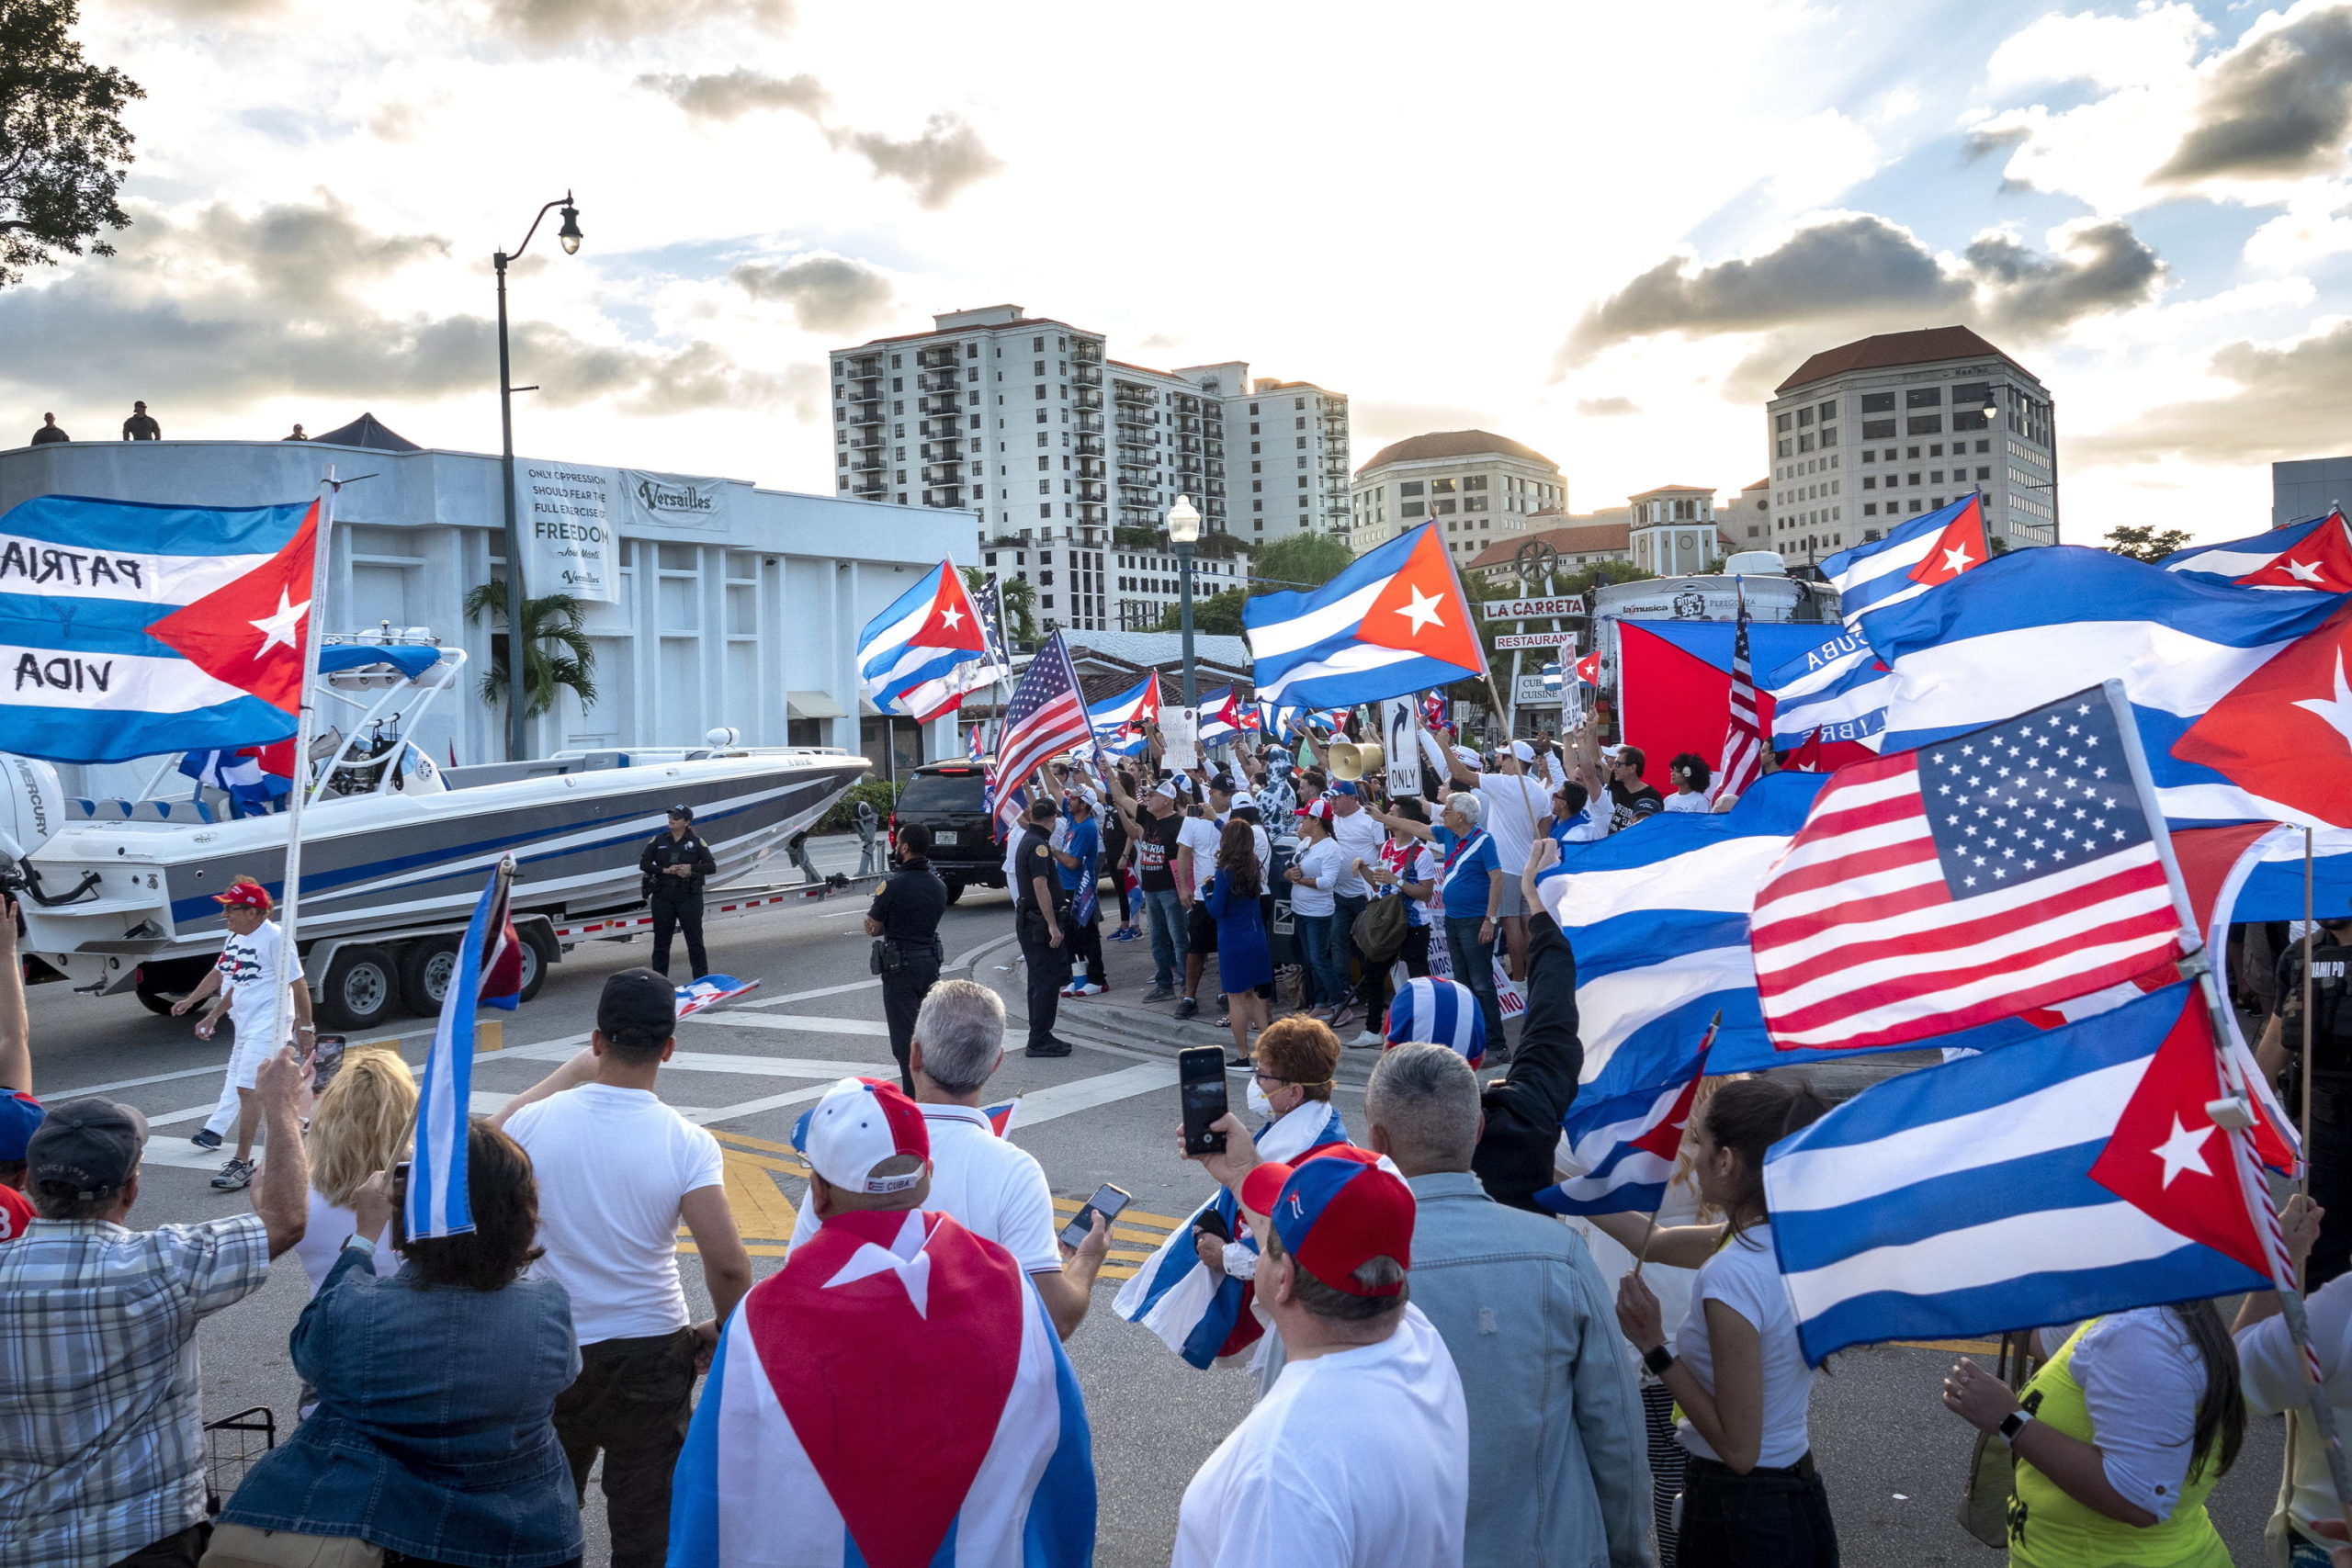 Attivisti e cittadini cubano-americani hanno protestato contro il governo cubano davanti al ristorante 'Versailles' a Miami, in Florida